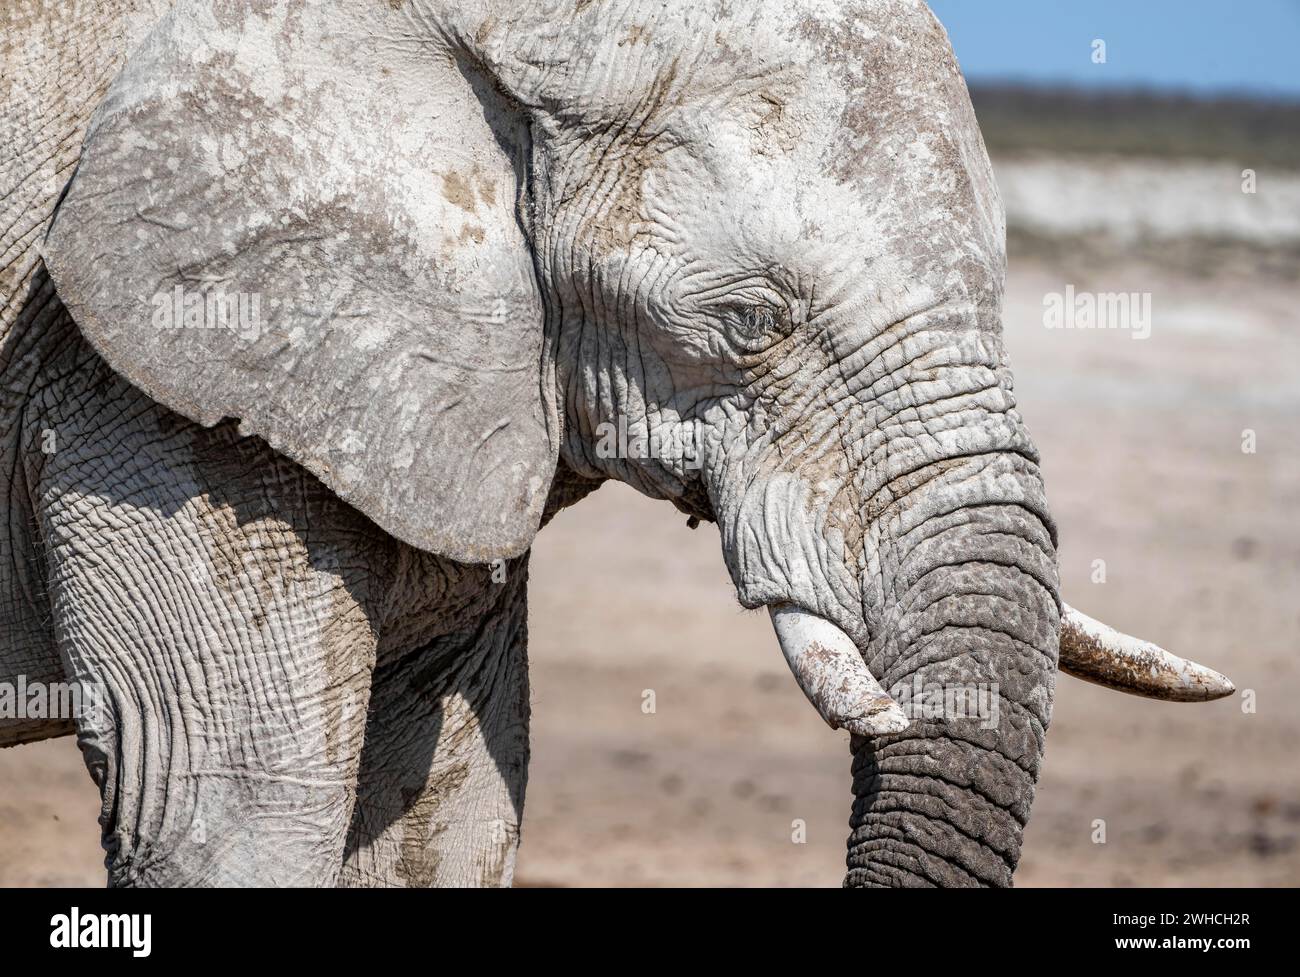 Afrikanischer Elefant (Loxodonta africana), männlich, Tierporträt, Nebrowni Wasserloch, Etosha Nationalpark, Namibia Stockfoto